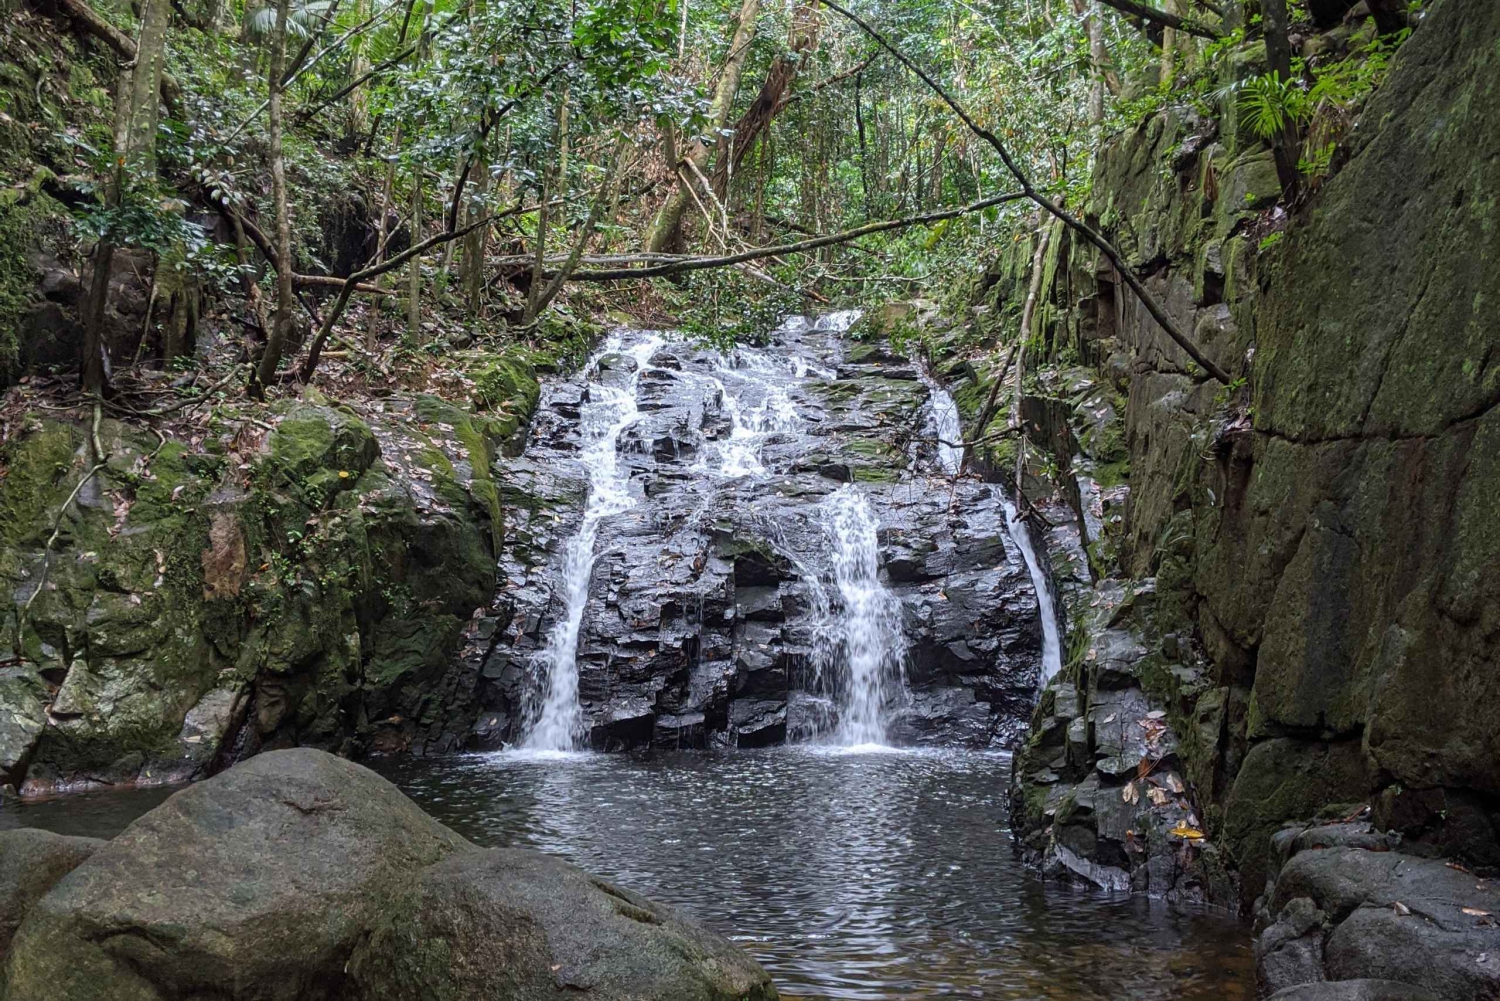 Escursione avventurosa nella giungla: arrampicata, cascata, scoperta delle Seychelles!